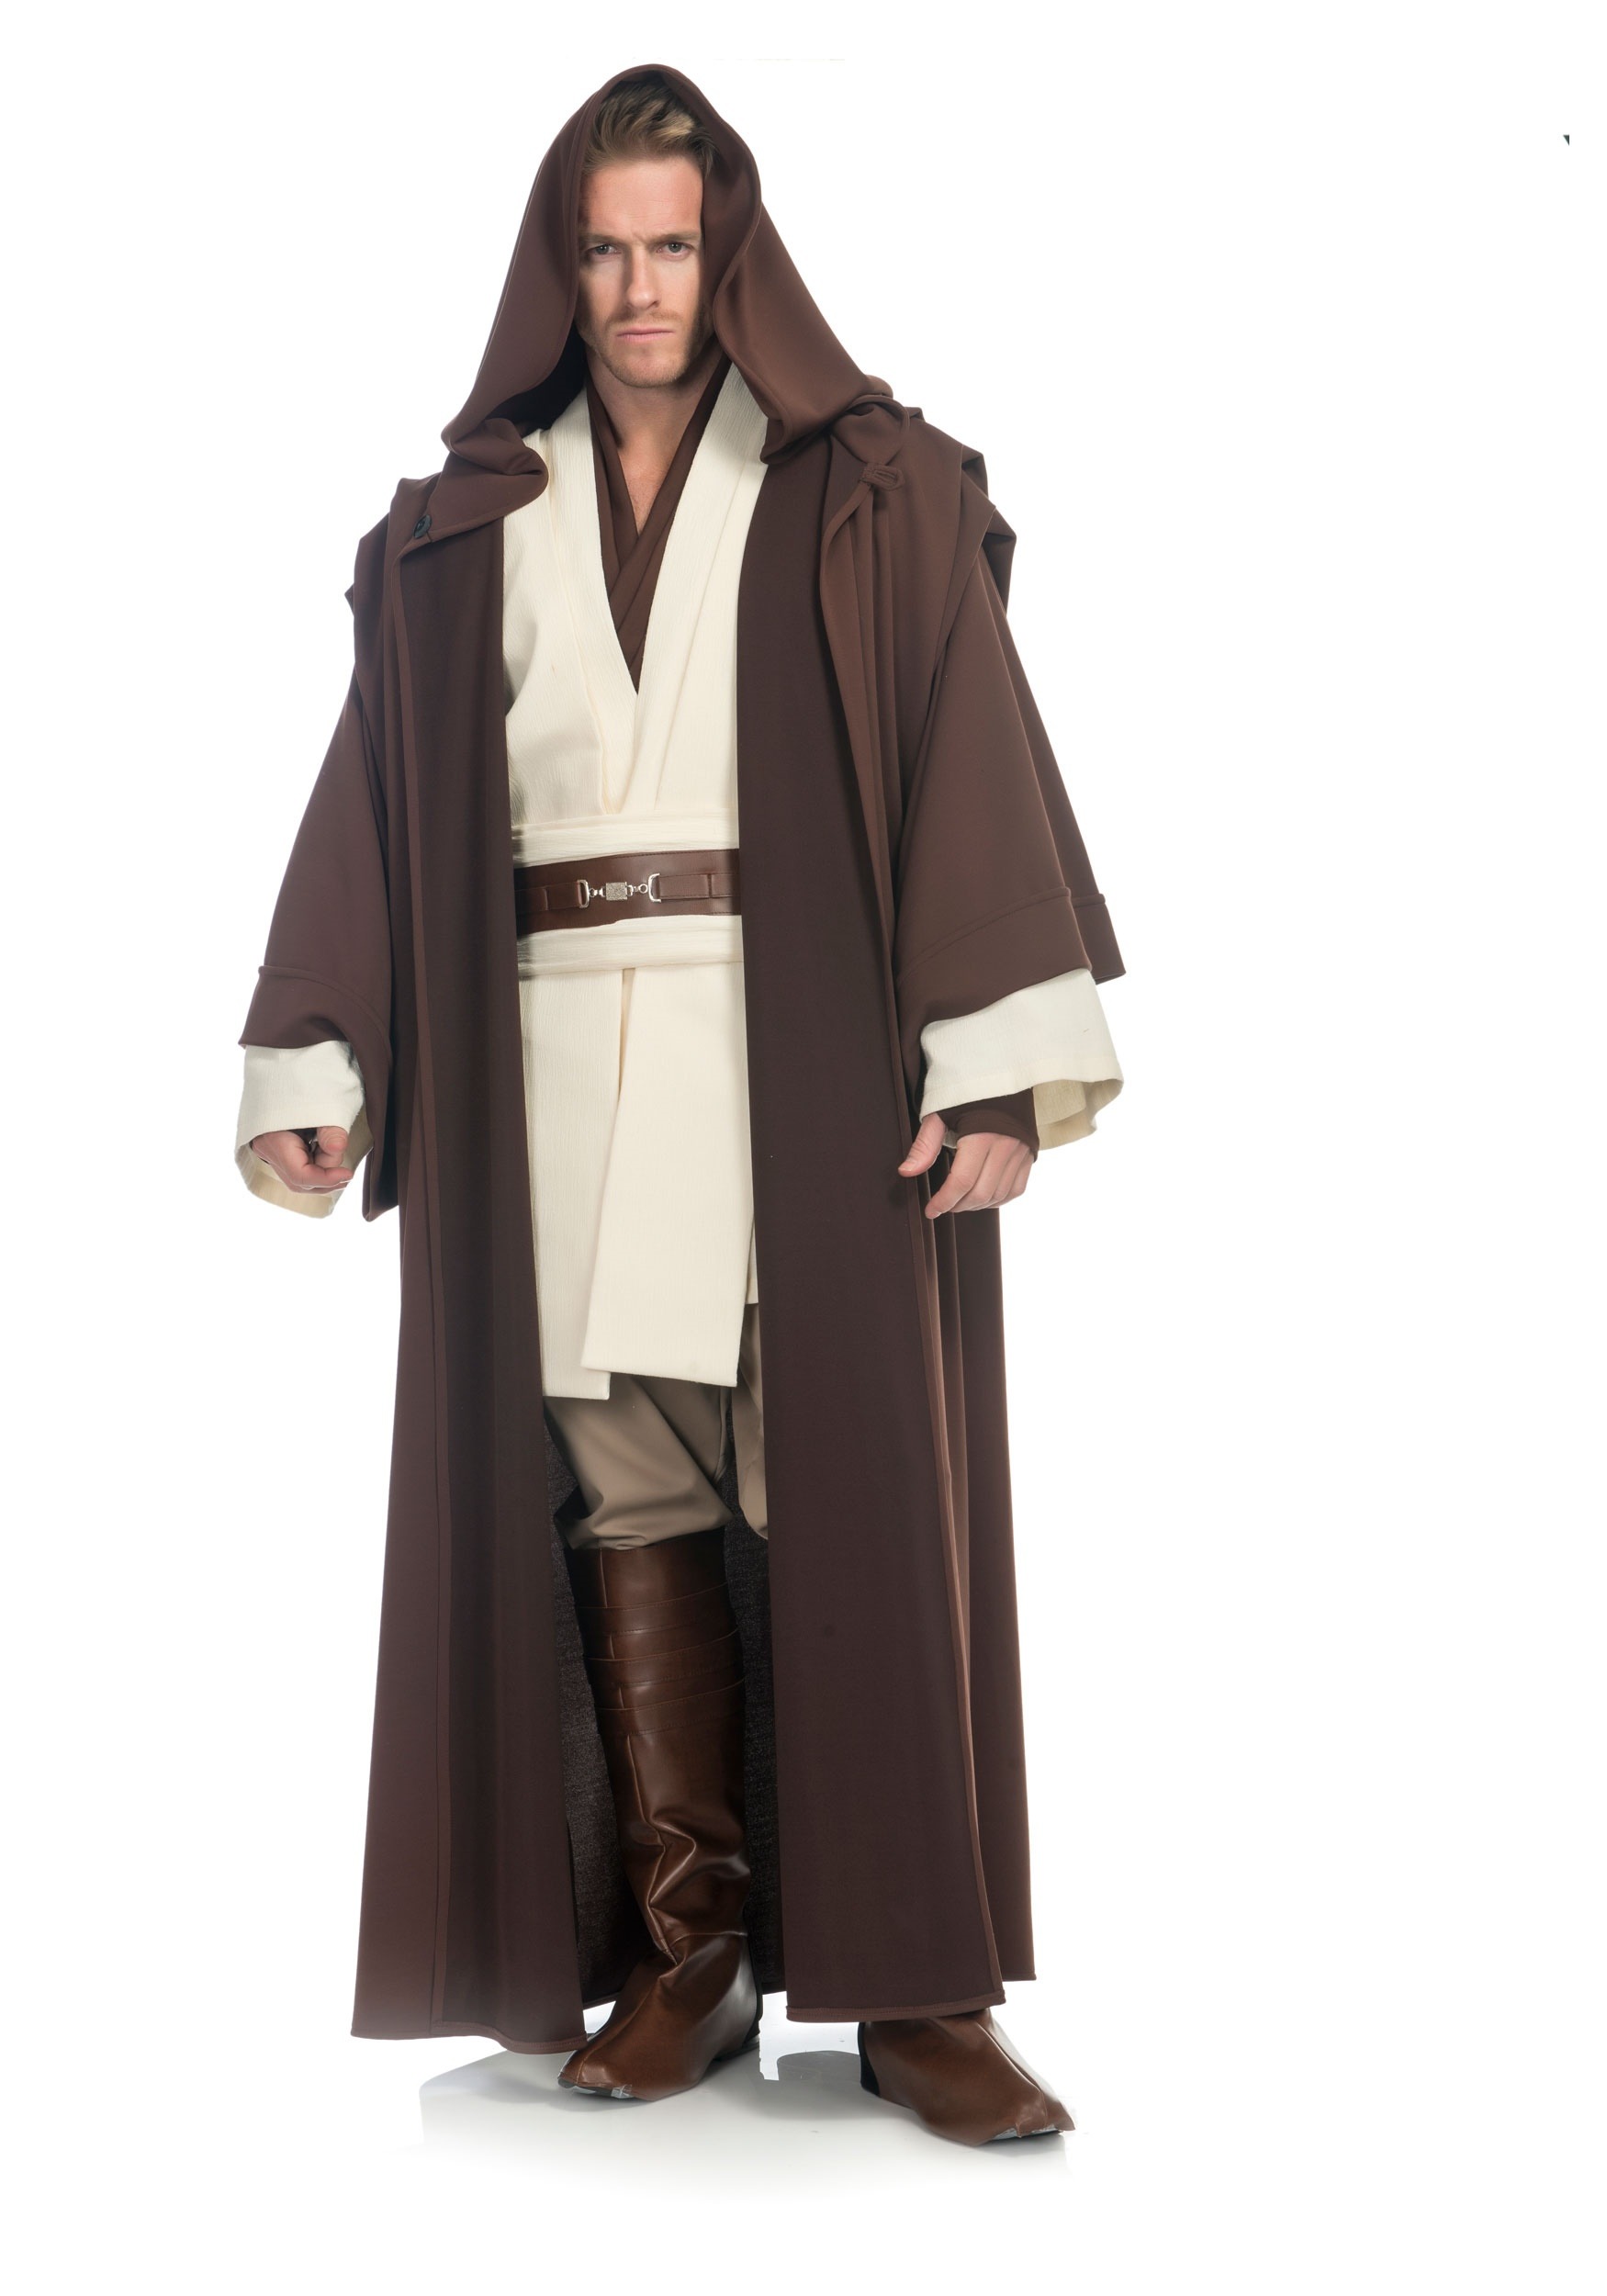 Image of Obi Wan Kenobi Men's Costume from Star Wars ID CH03285-L